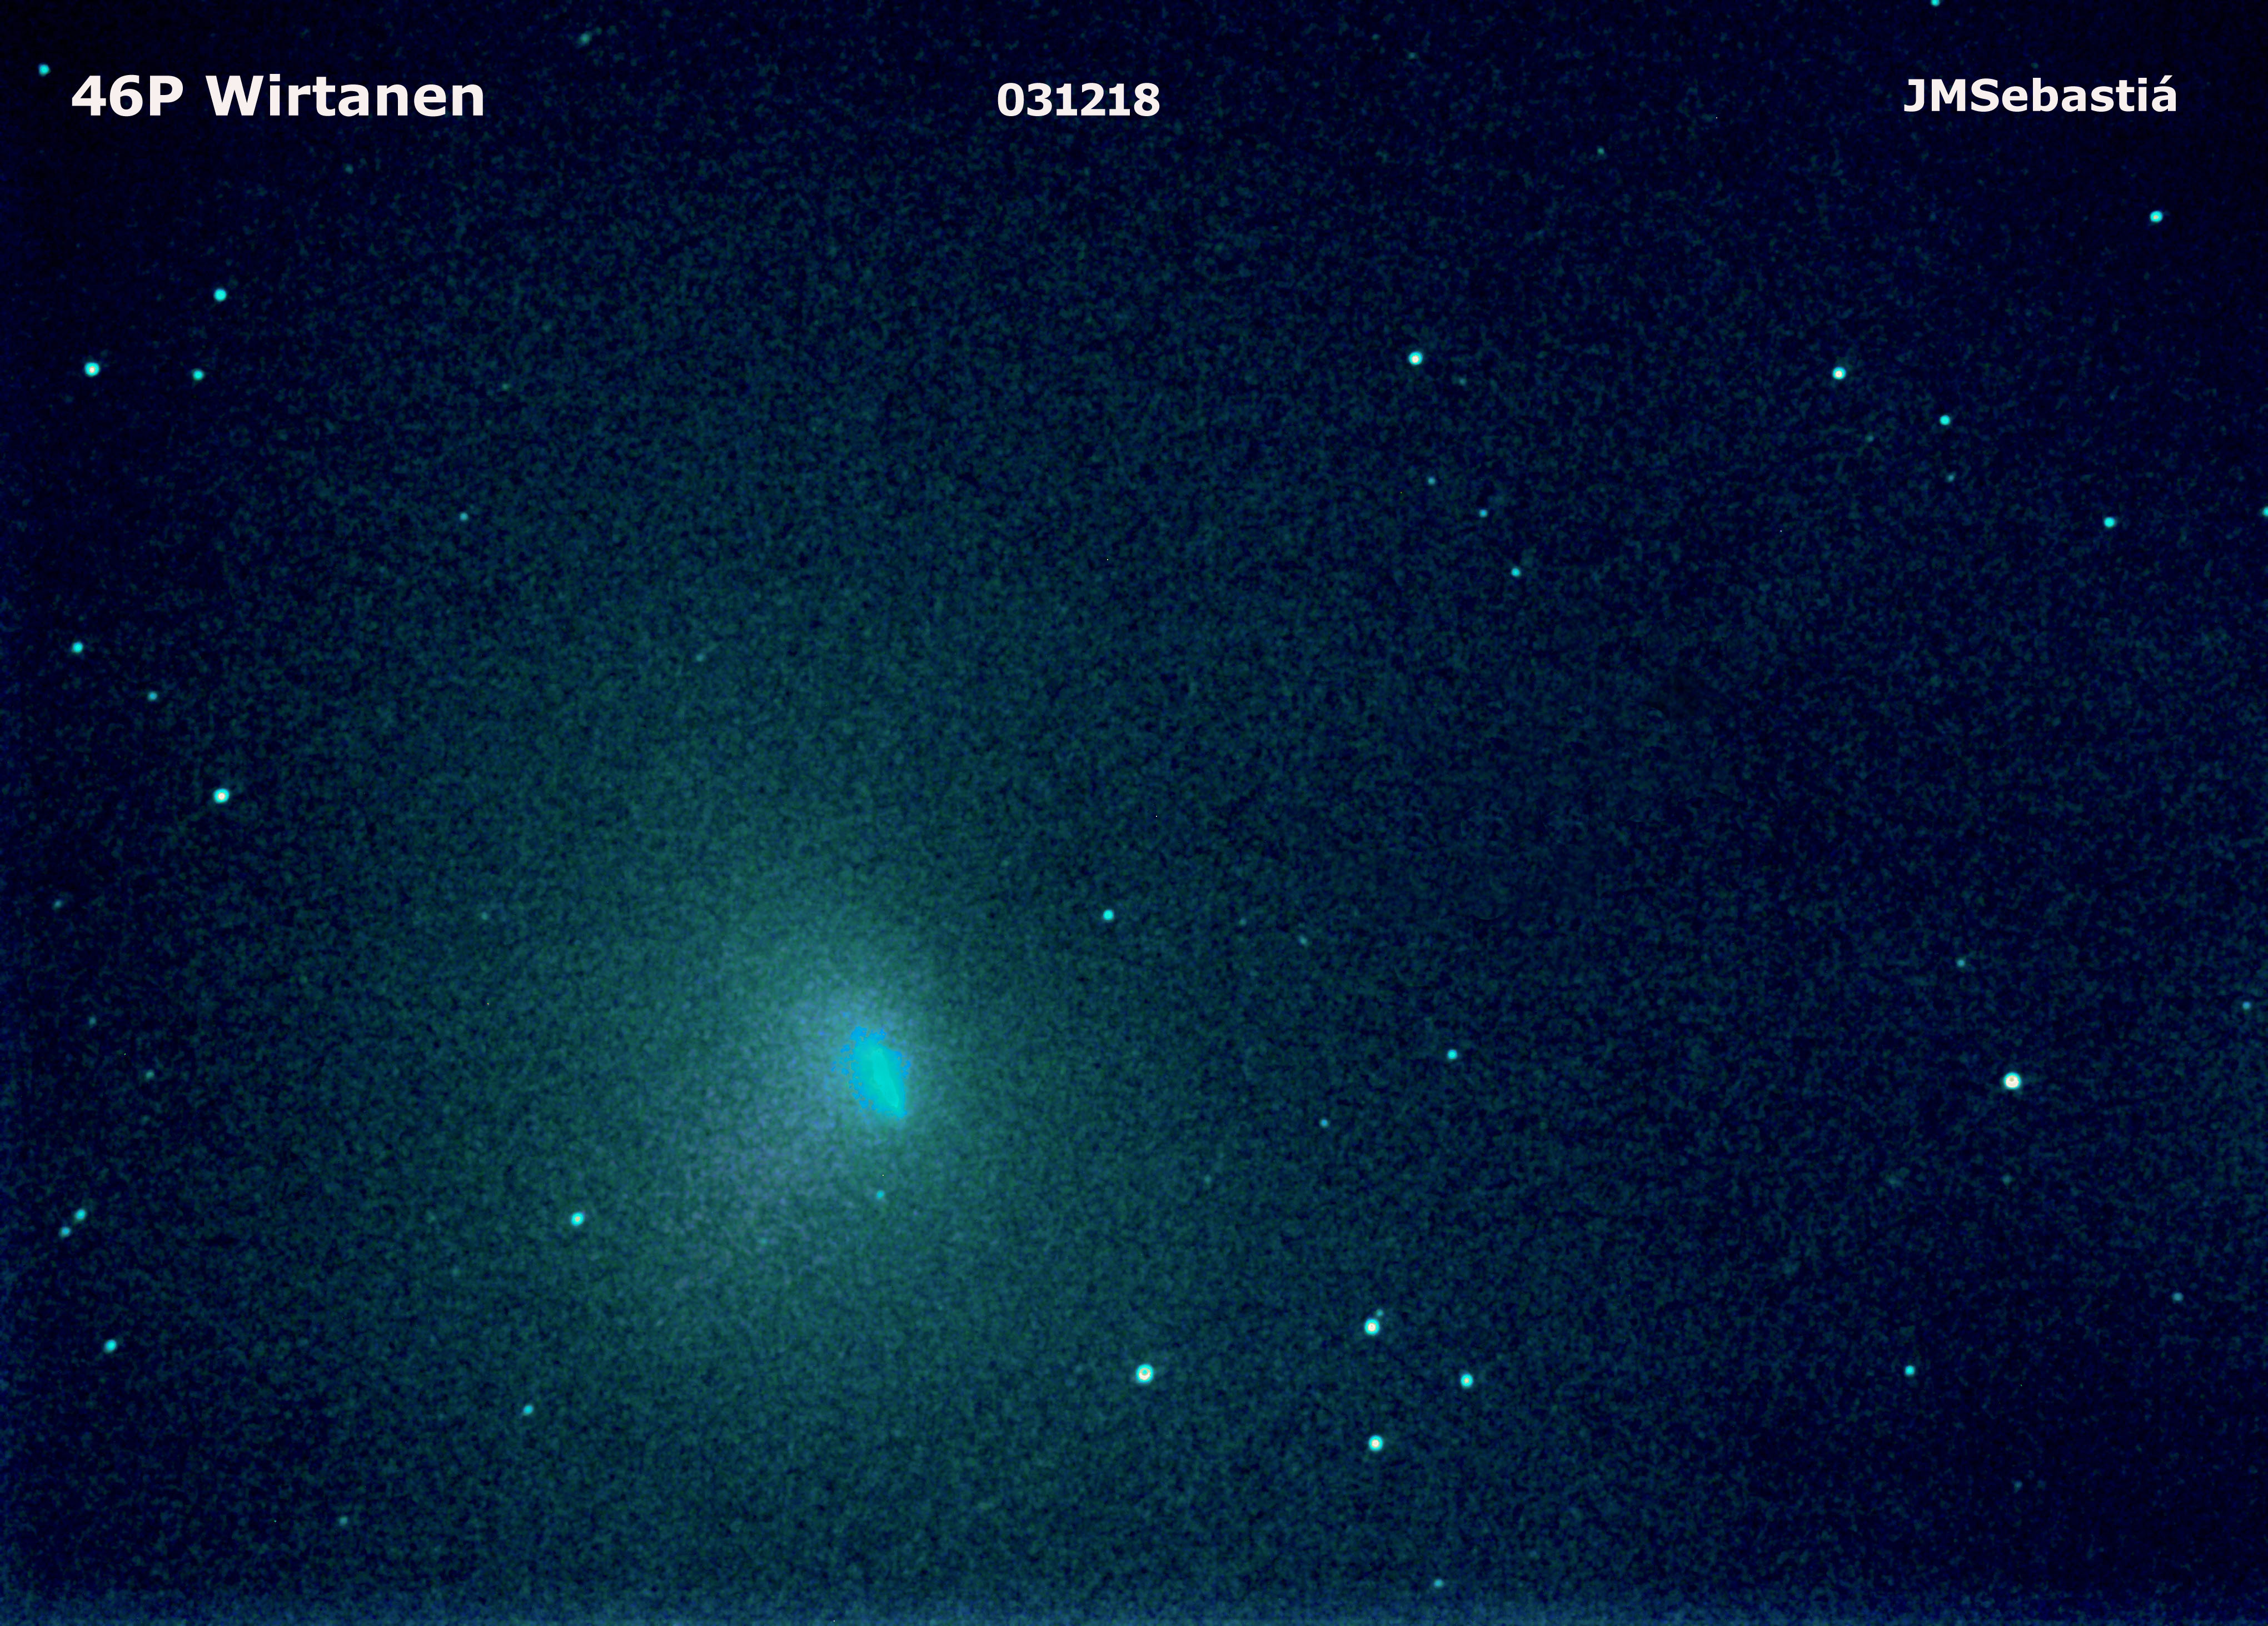 Cometa 46 P Wirtanen